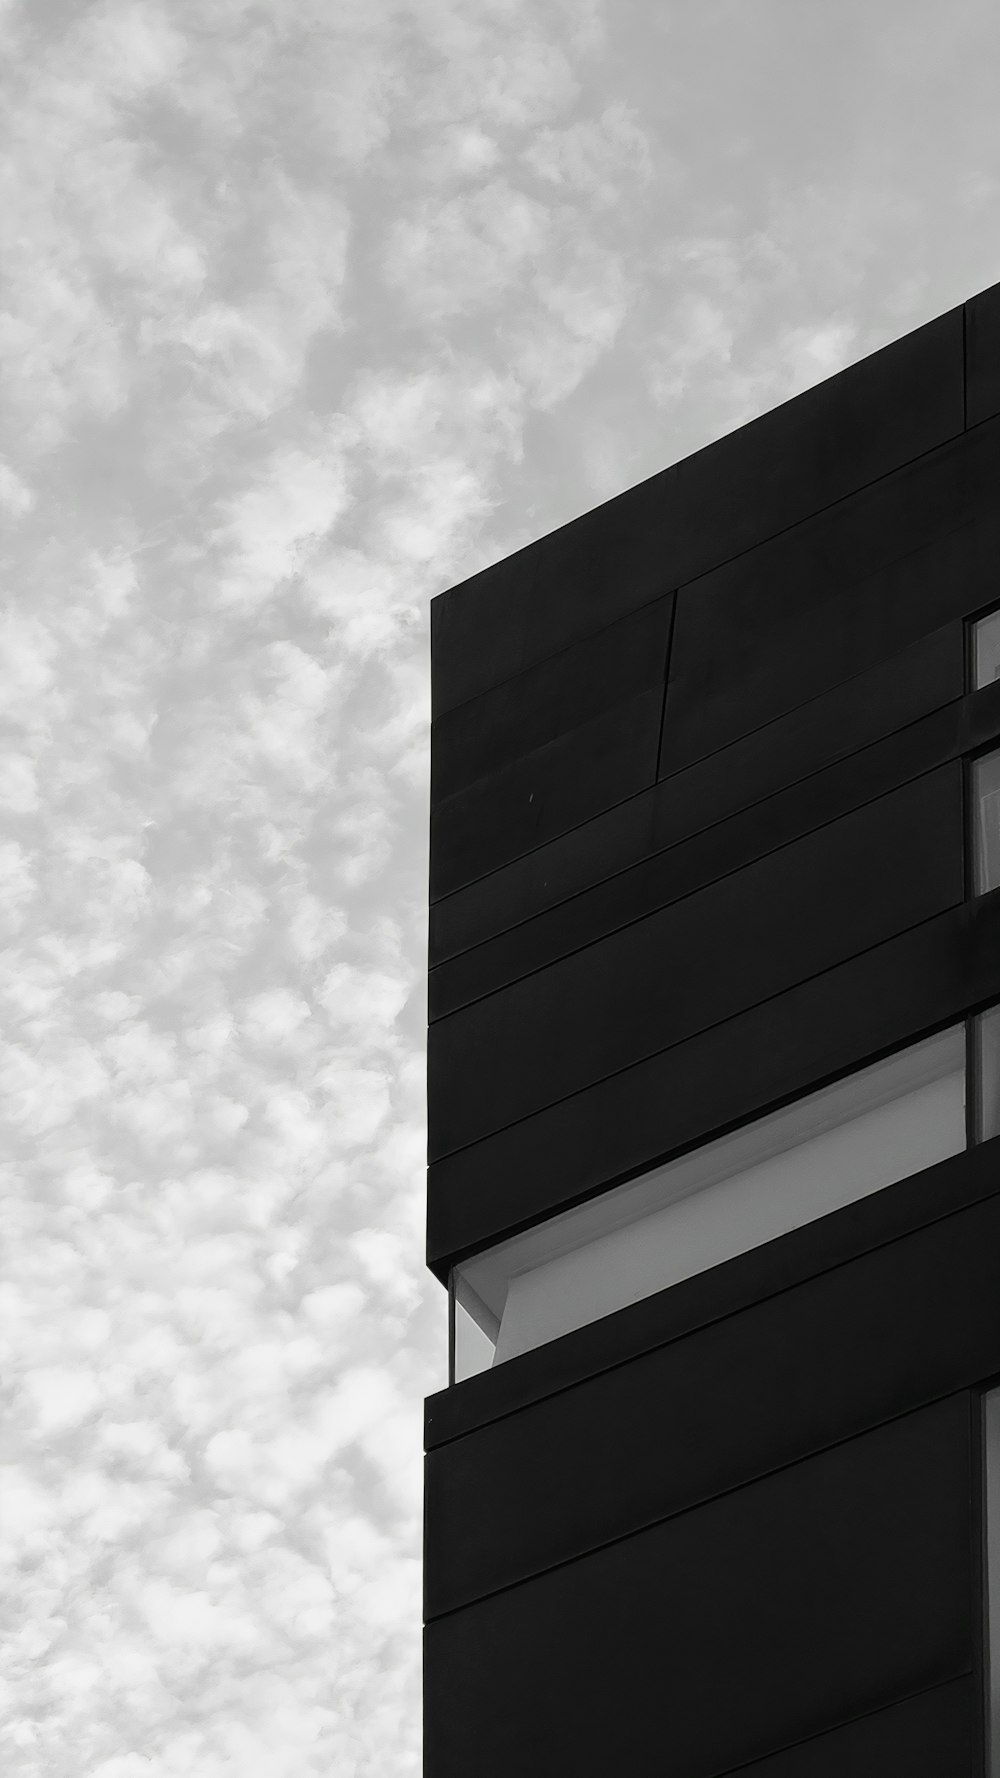 Edificio de hormigón blanco y negro bajo nubes blancas durante el día